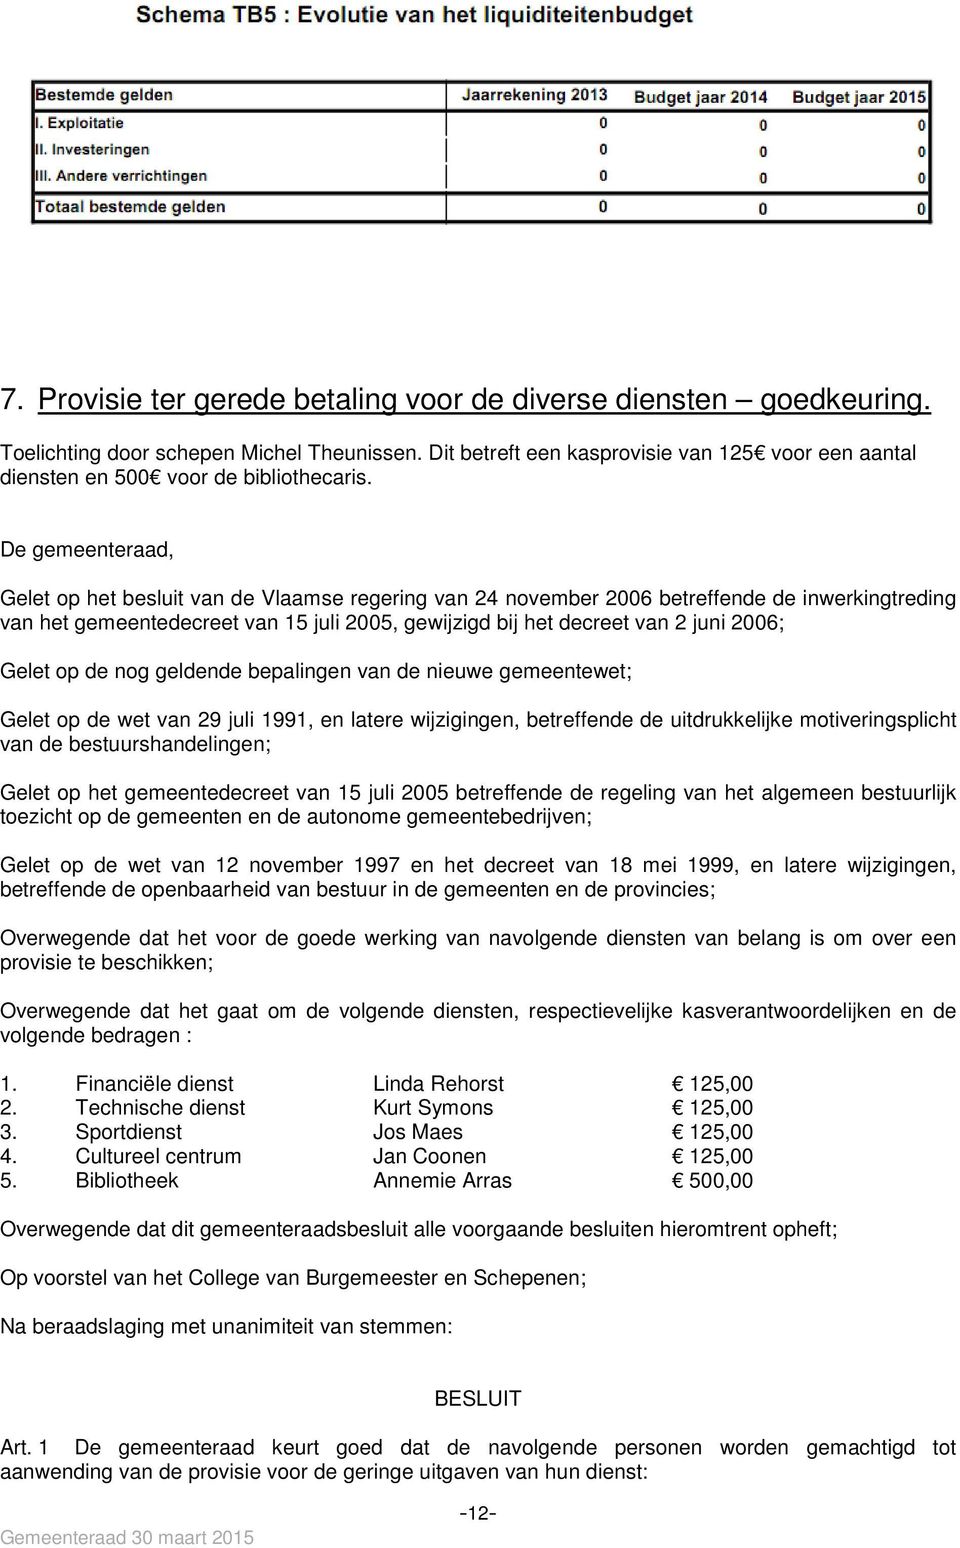 De gemeenteraad, Gelet op het besluit van de Vlaamse regering van 24 november 2006 betreffende de inwerkingtreding van het gemeentedecreet van 15 juli 2005, gewijzigd bij het decreet van 2 juni 2006;